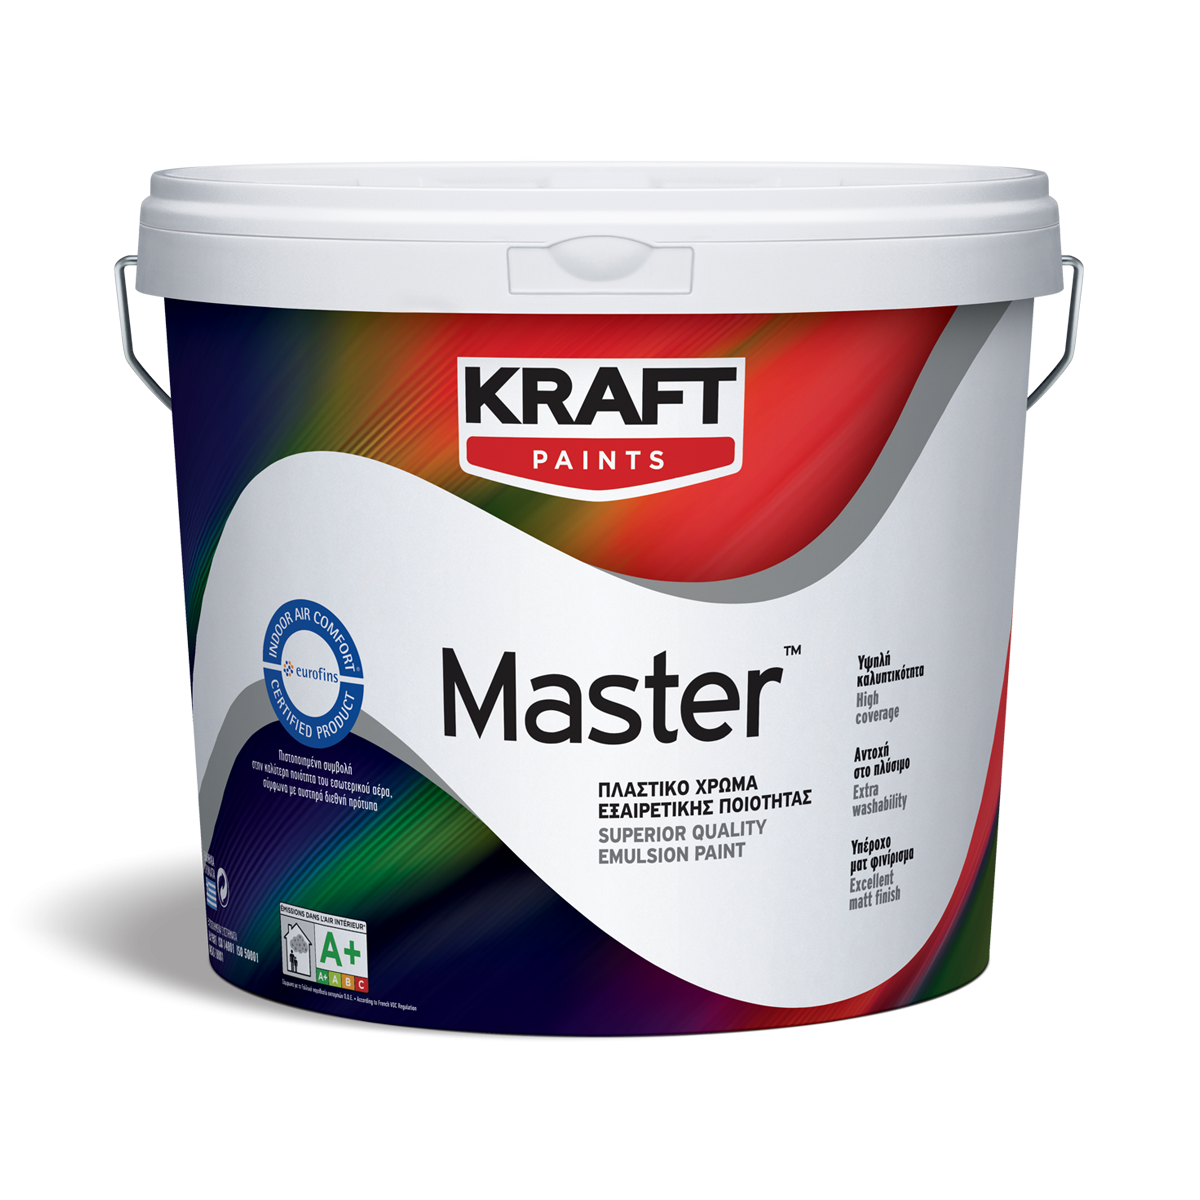 Kraft Master Plastico - boja za unutr. zidove 0.75l   Kraft